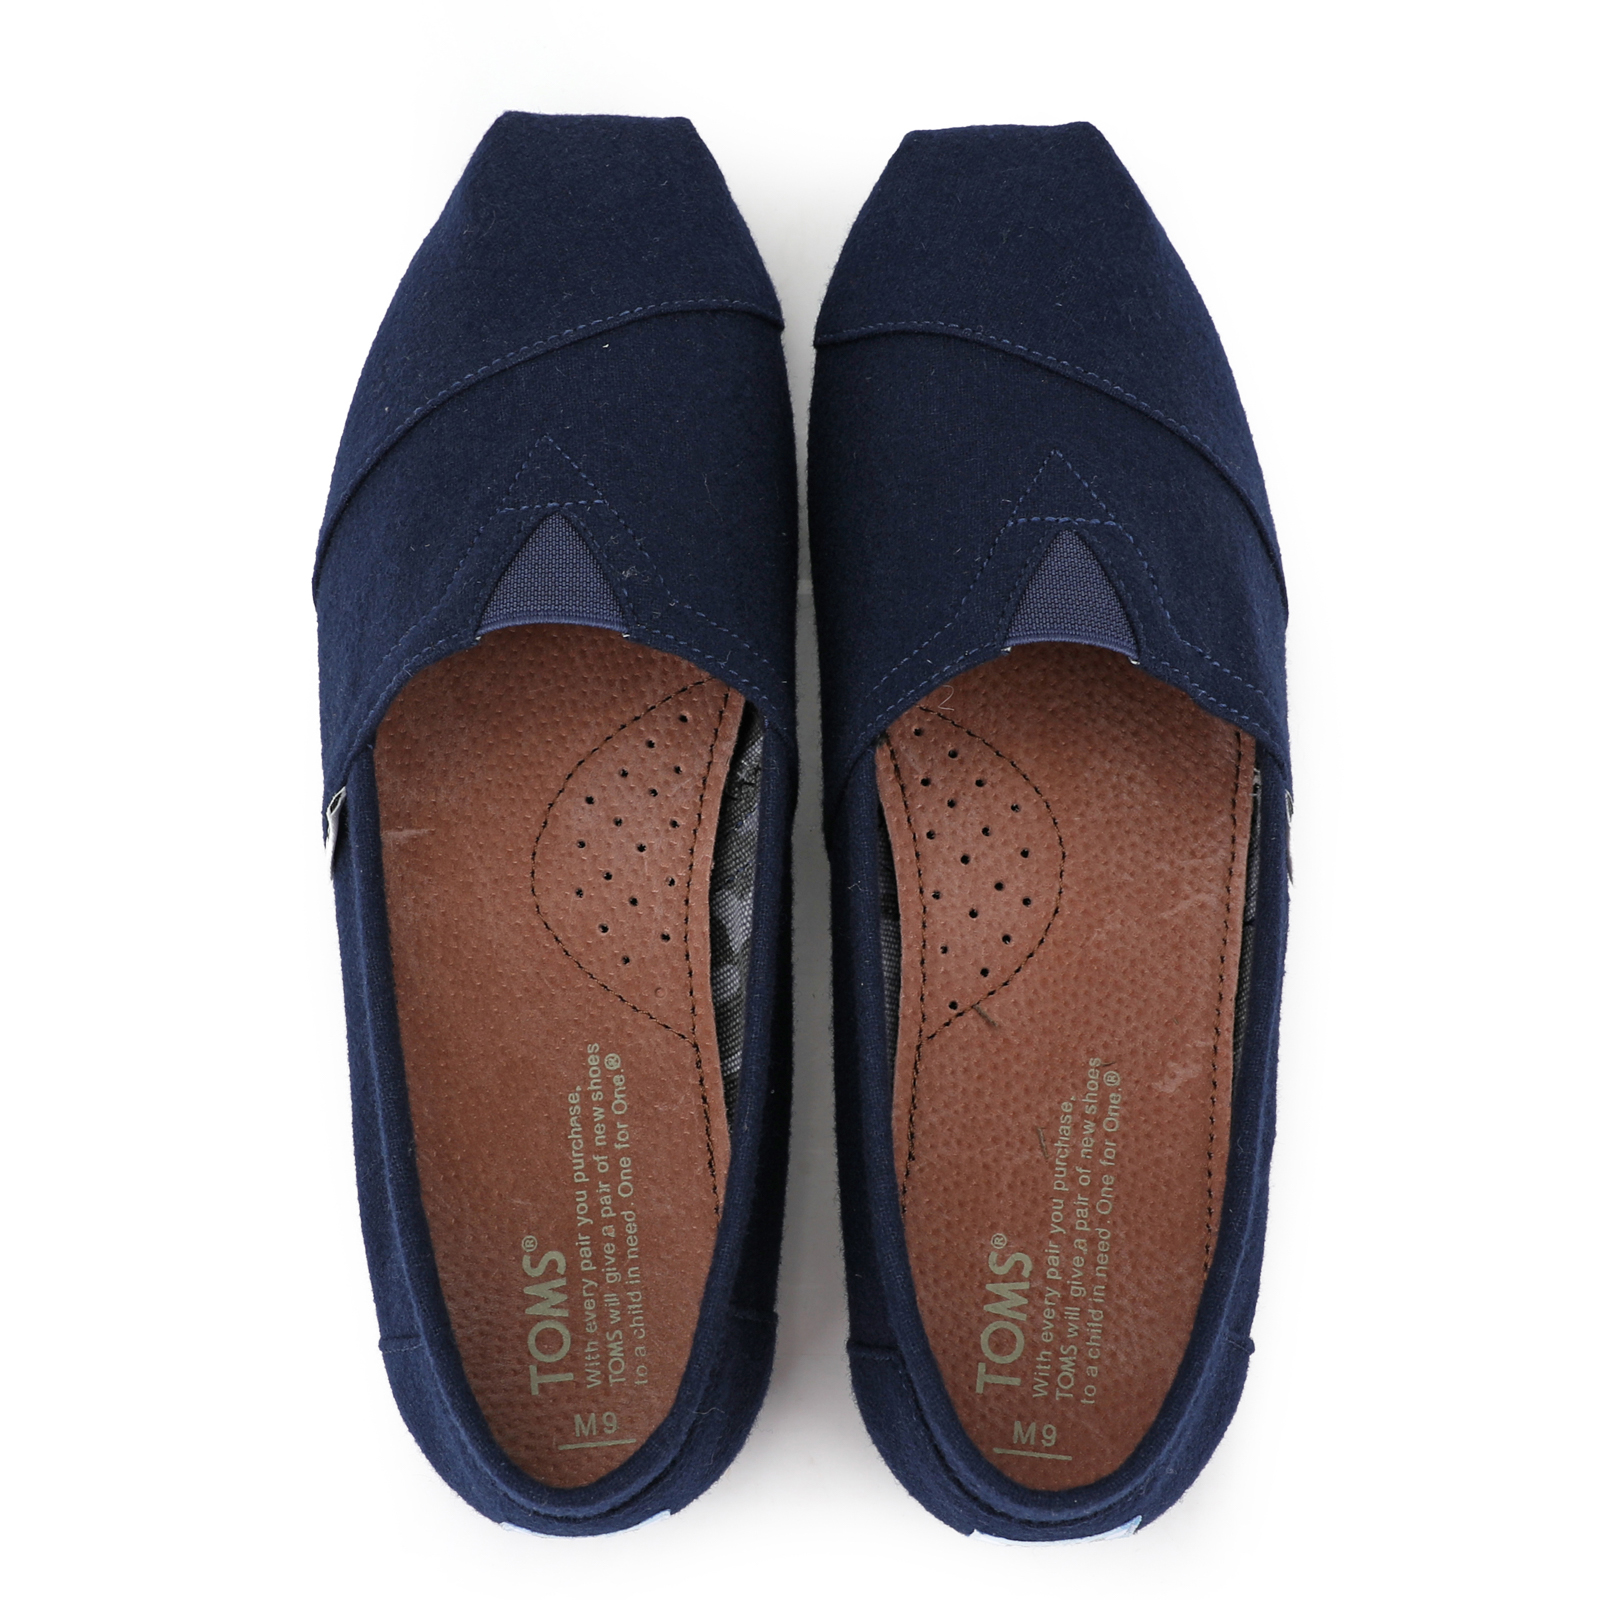 Toms香港新款藍色法蘭絨男鞋 - 點擊圖片關閉